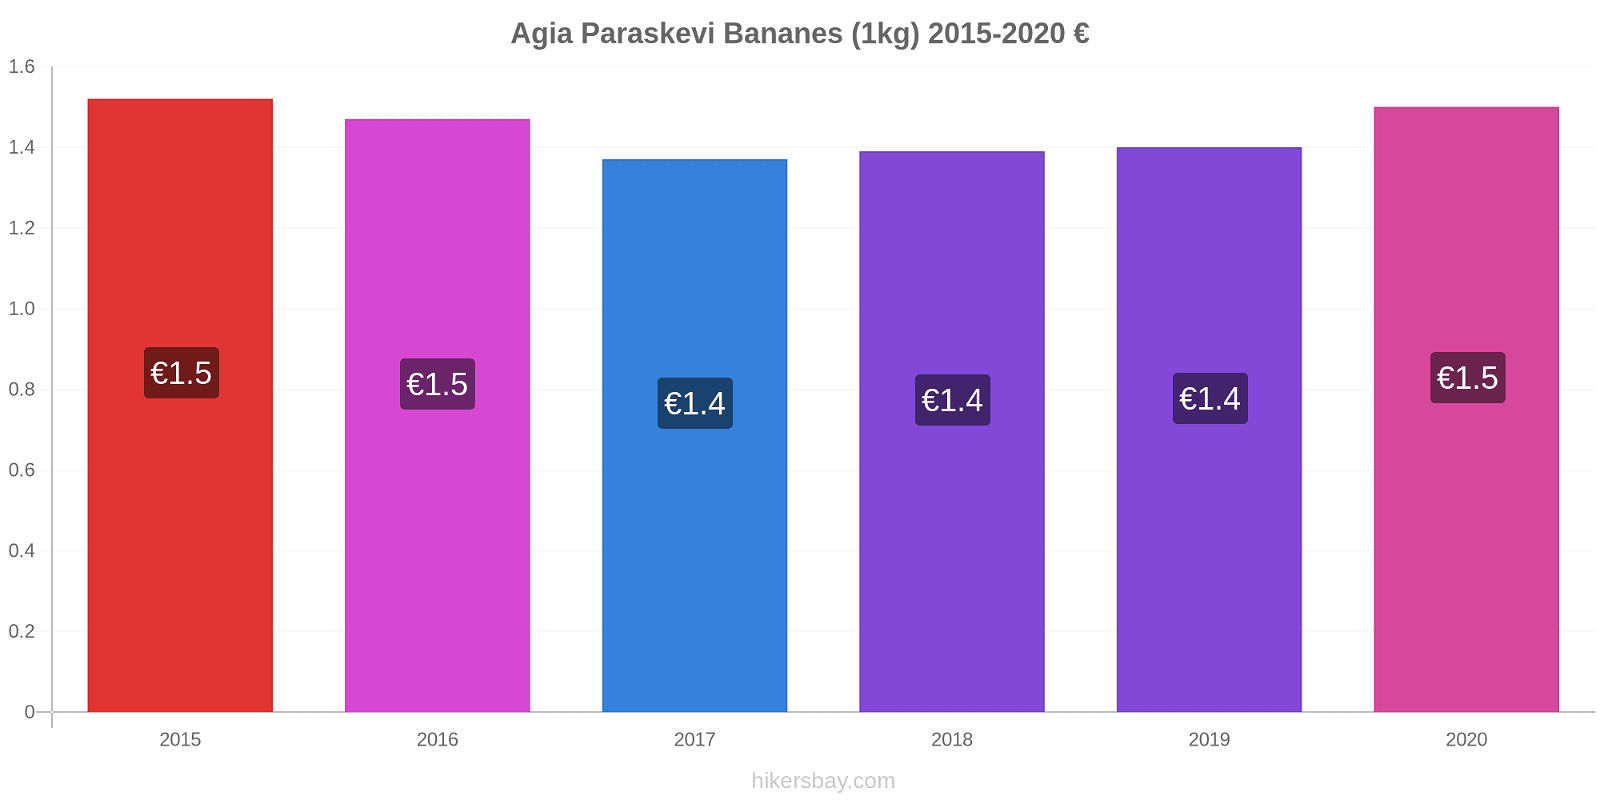 Agia Paraskevi changements de prix Bananes (1kg) hikersbay.com